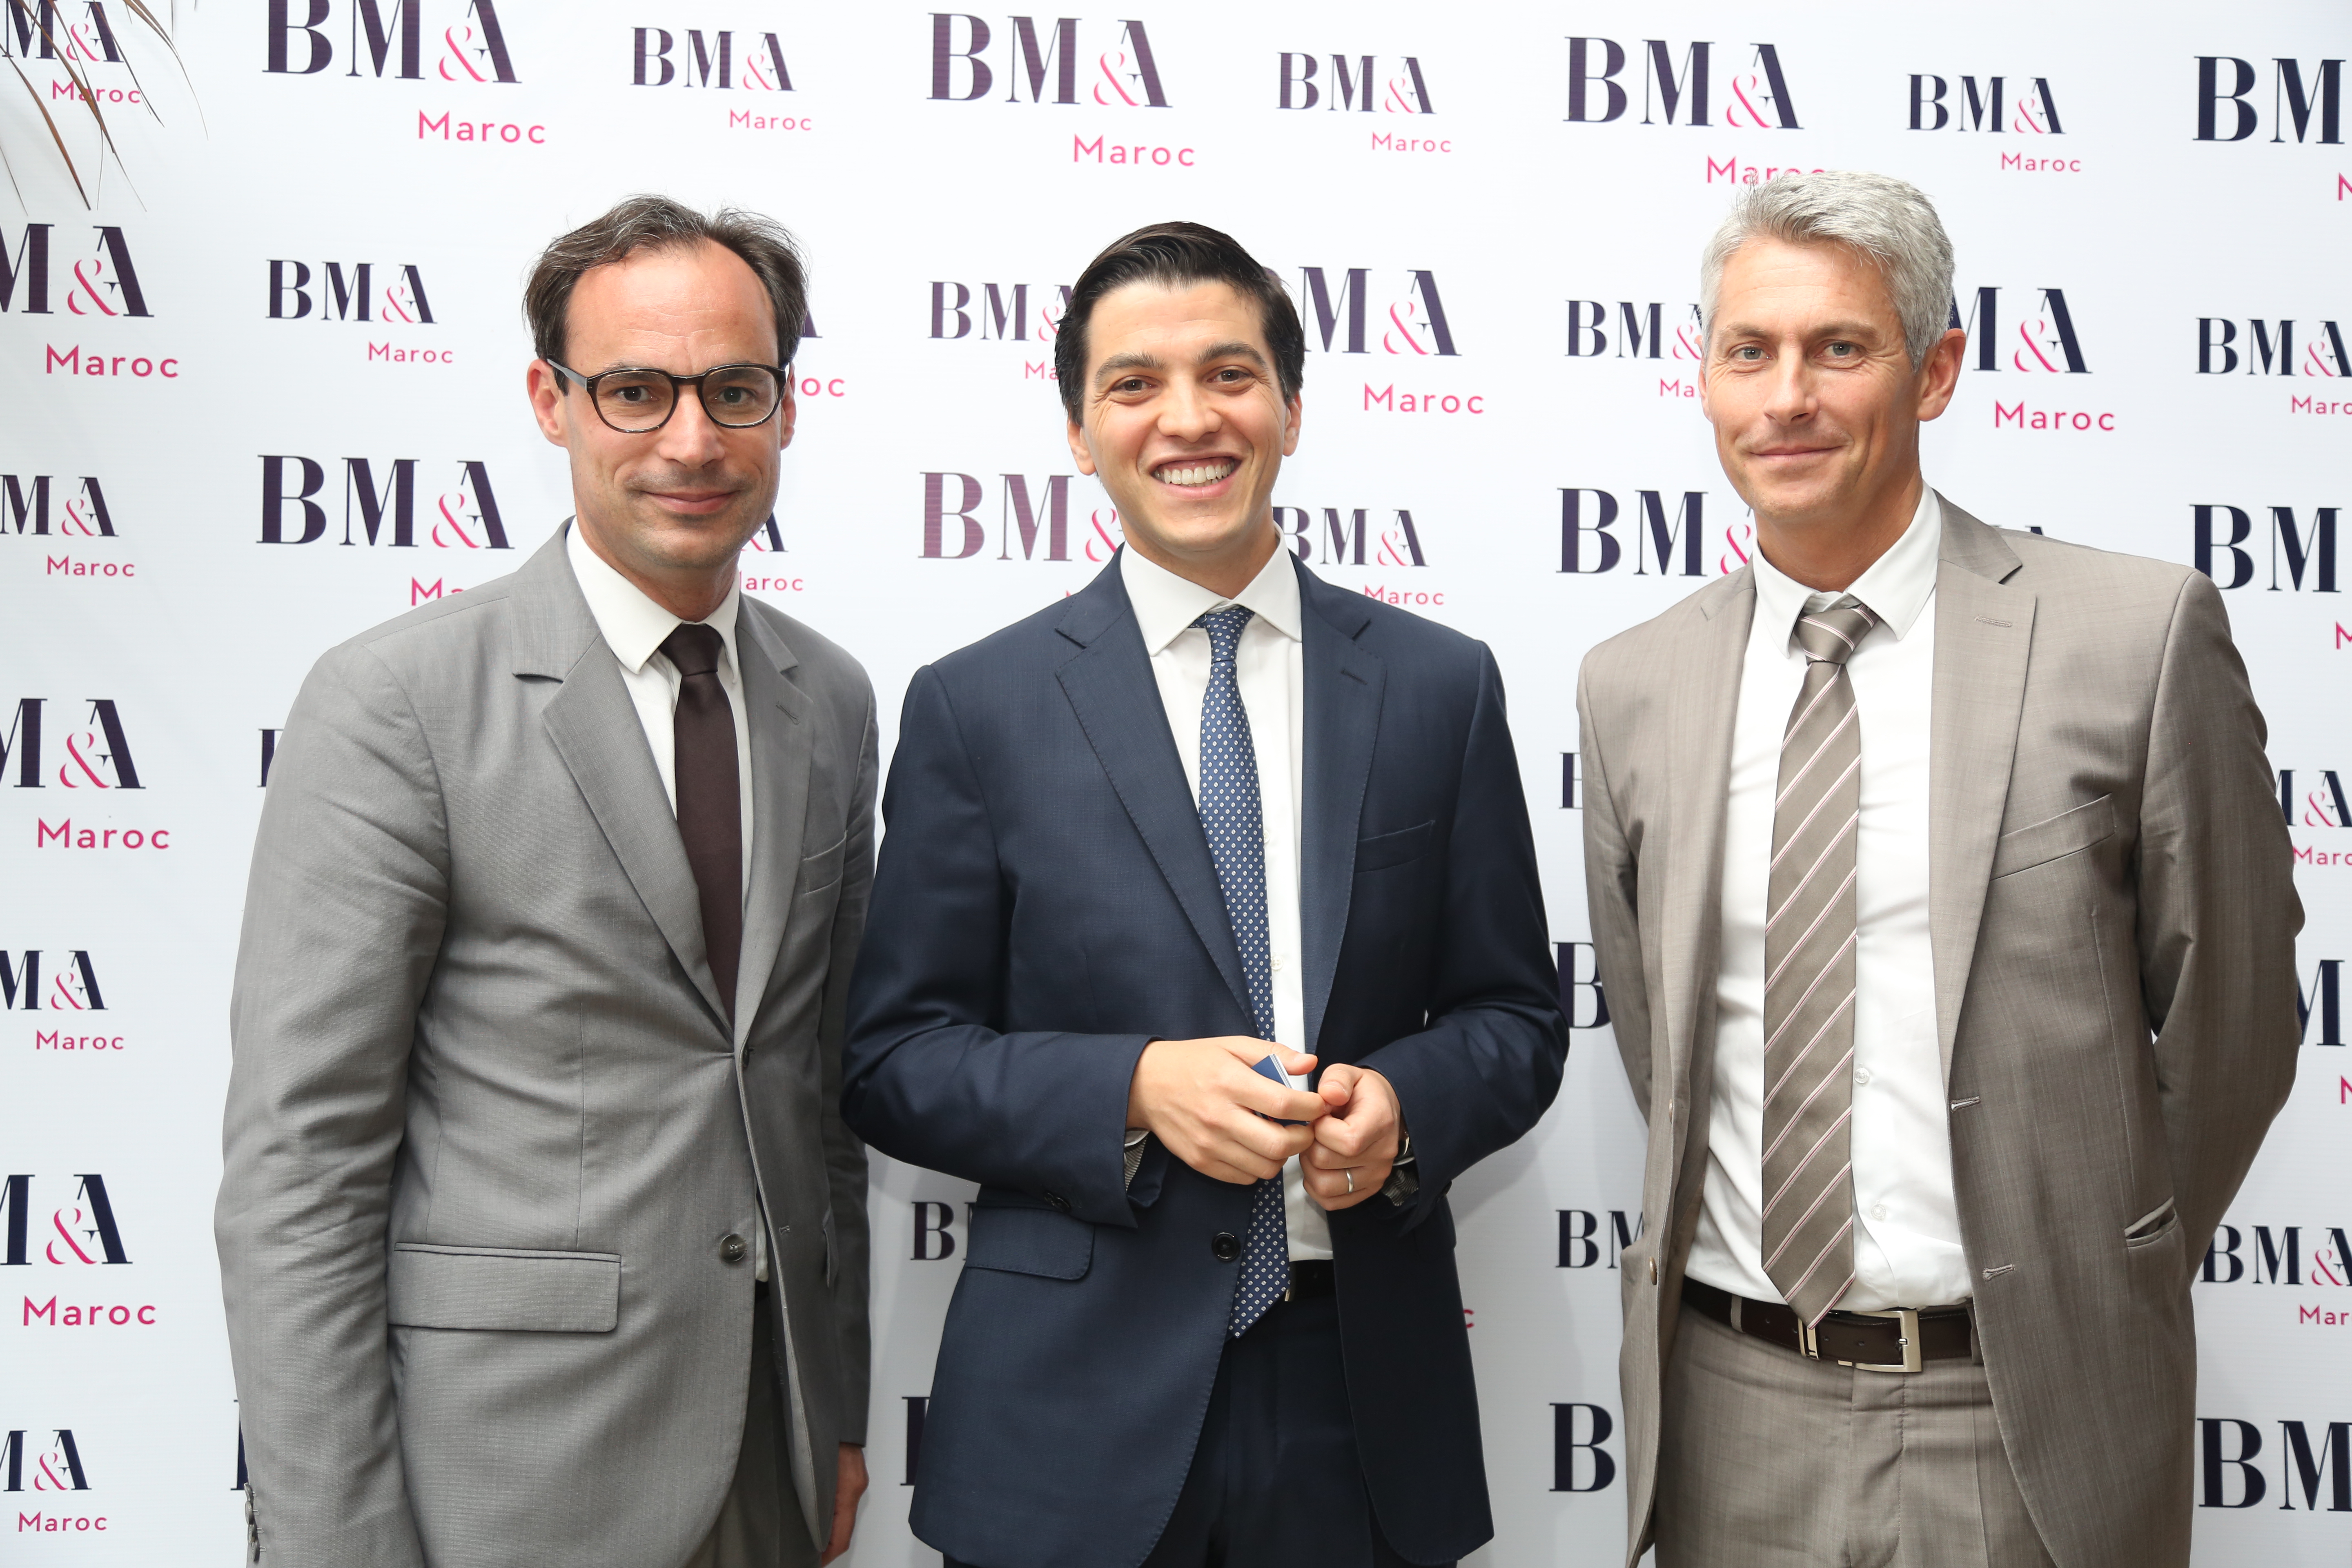 BM&A ouvre son premier bureau au Maroc